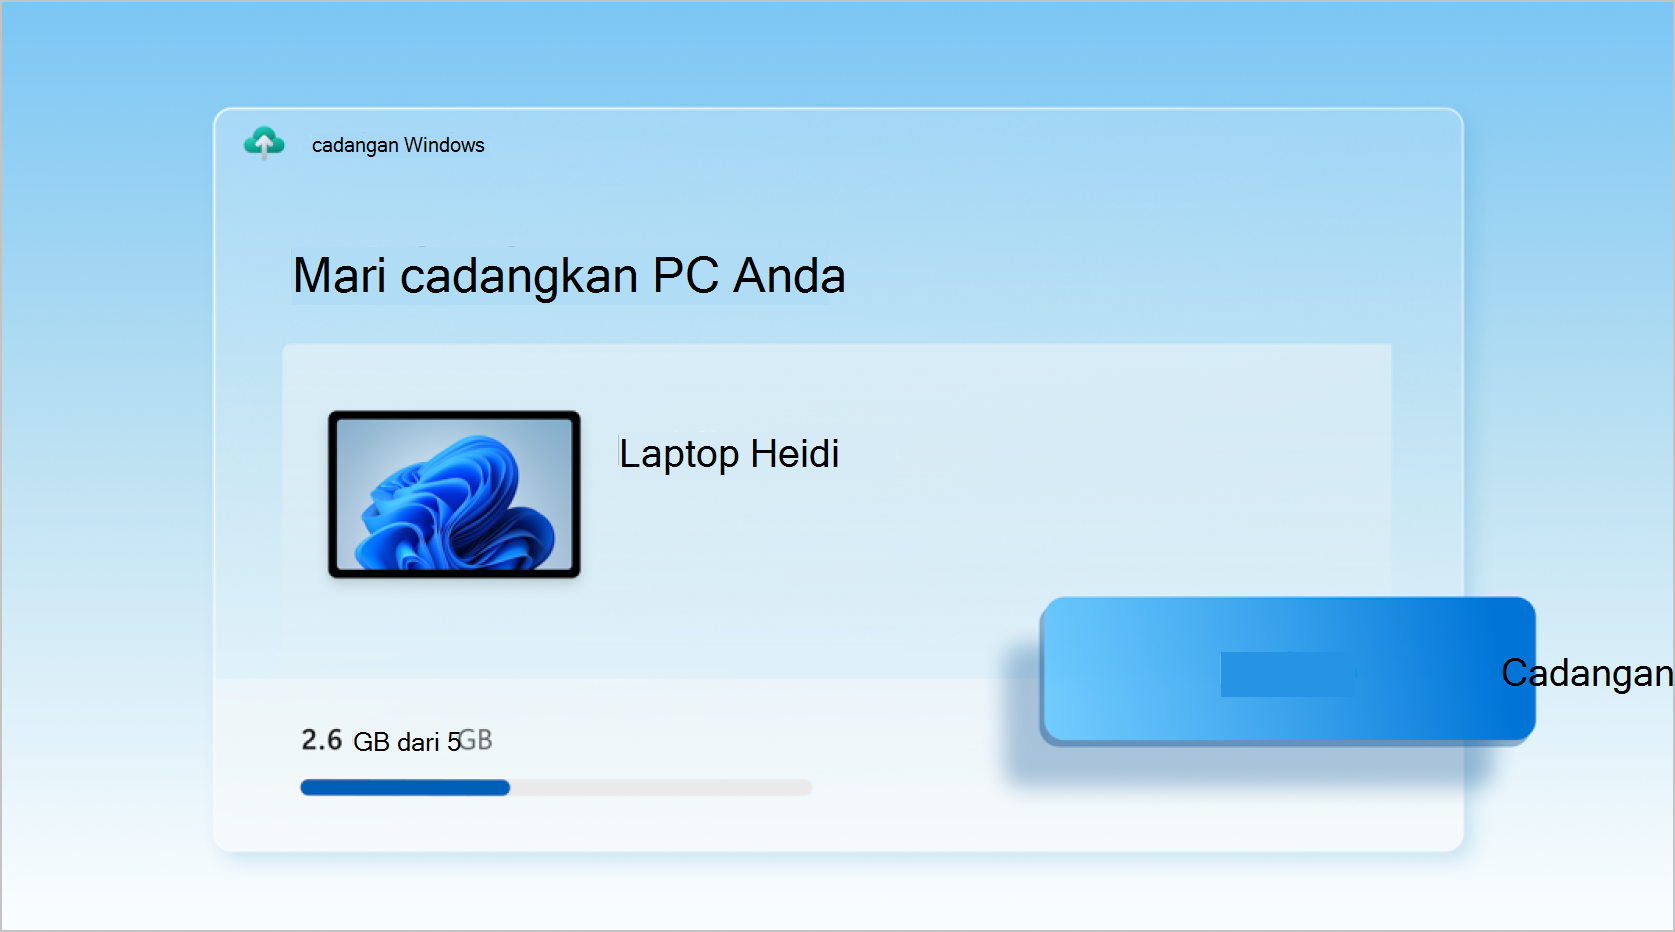 Cuplikan layar cadangan Windows sedang digunakan untuk mencadangkan laptop.